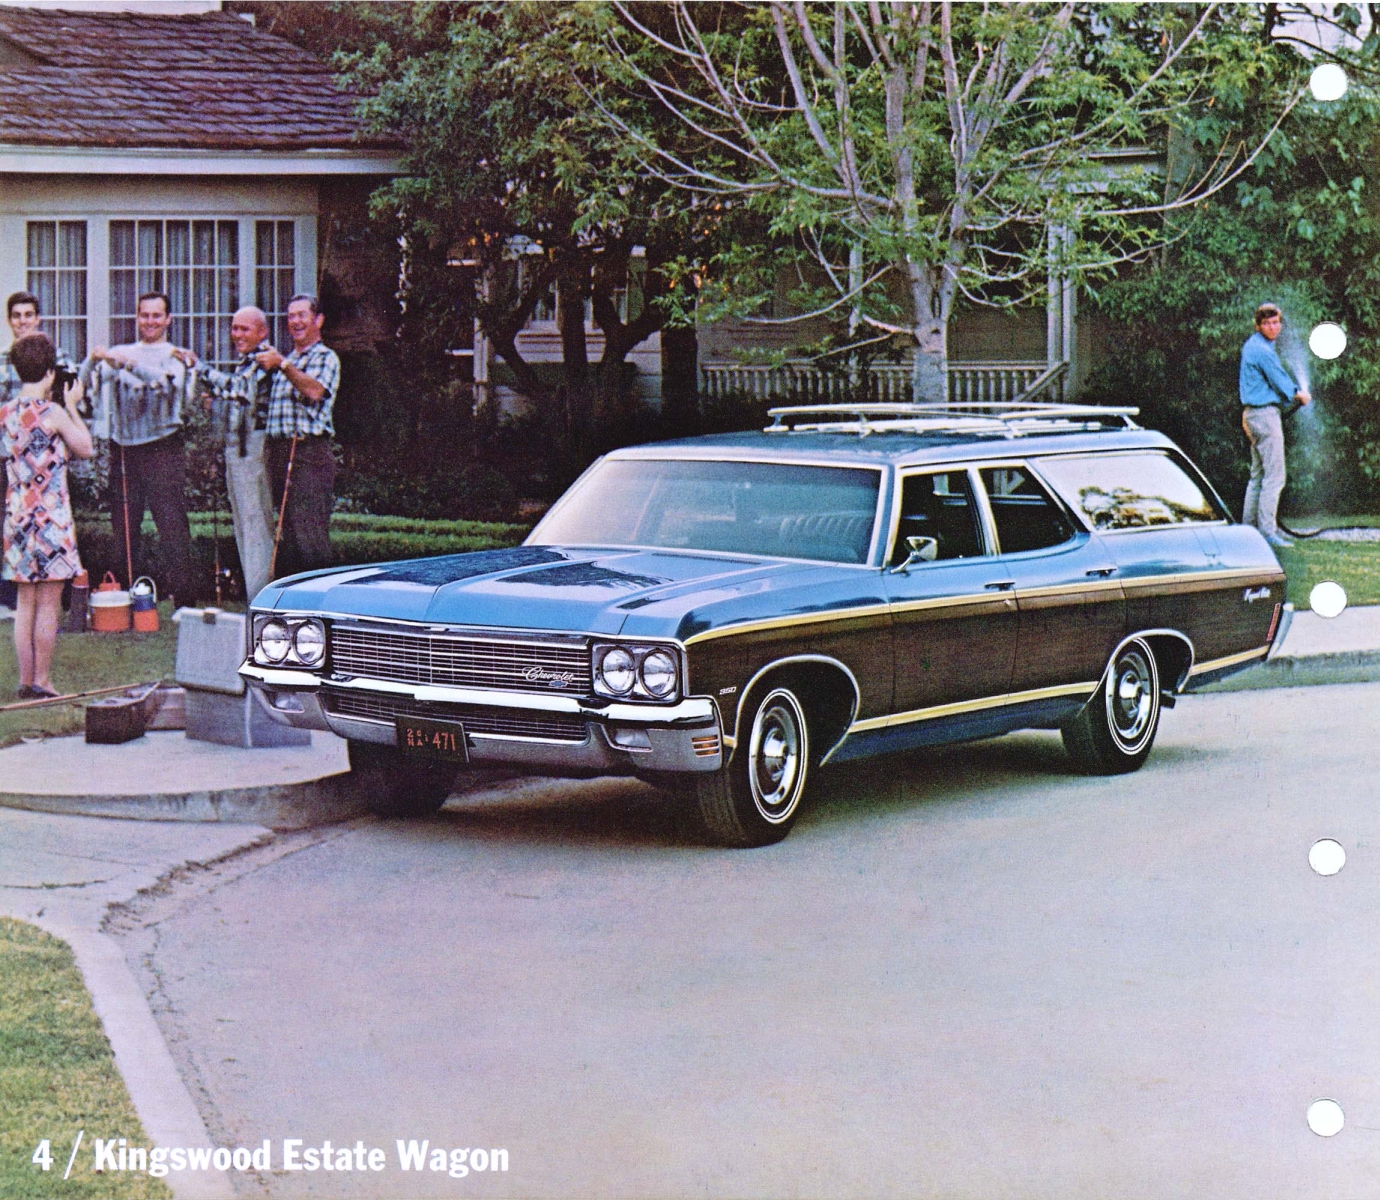 1970_Chevrolet_Dealer_Album-04-04